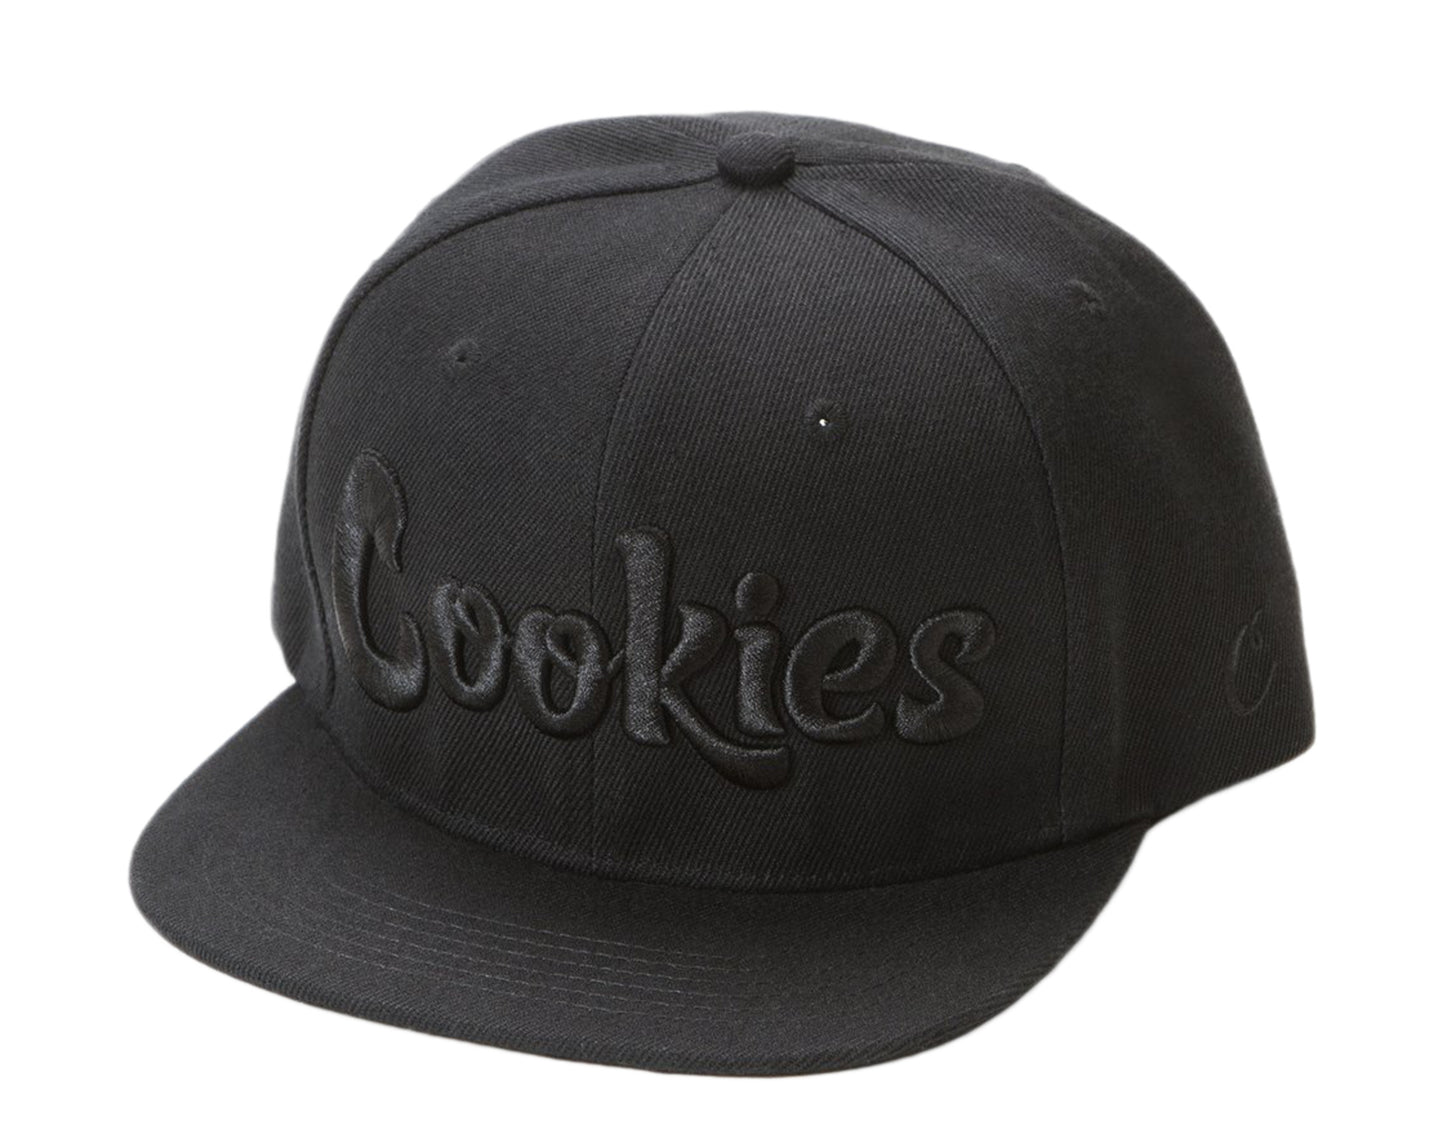 Cookies Original Logo Thin Mint Snapback Triple Black Men's Cap 1536X3322-BLK